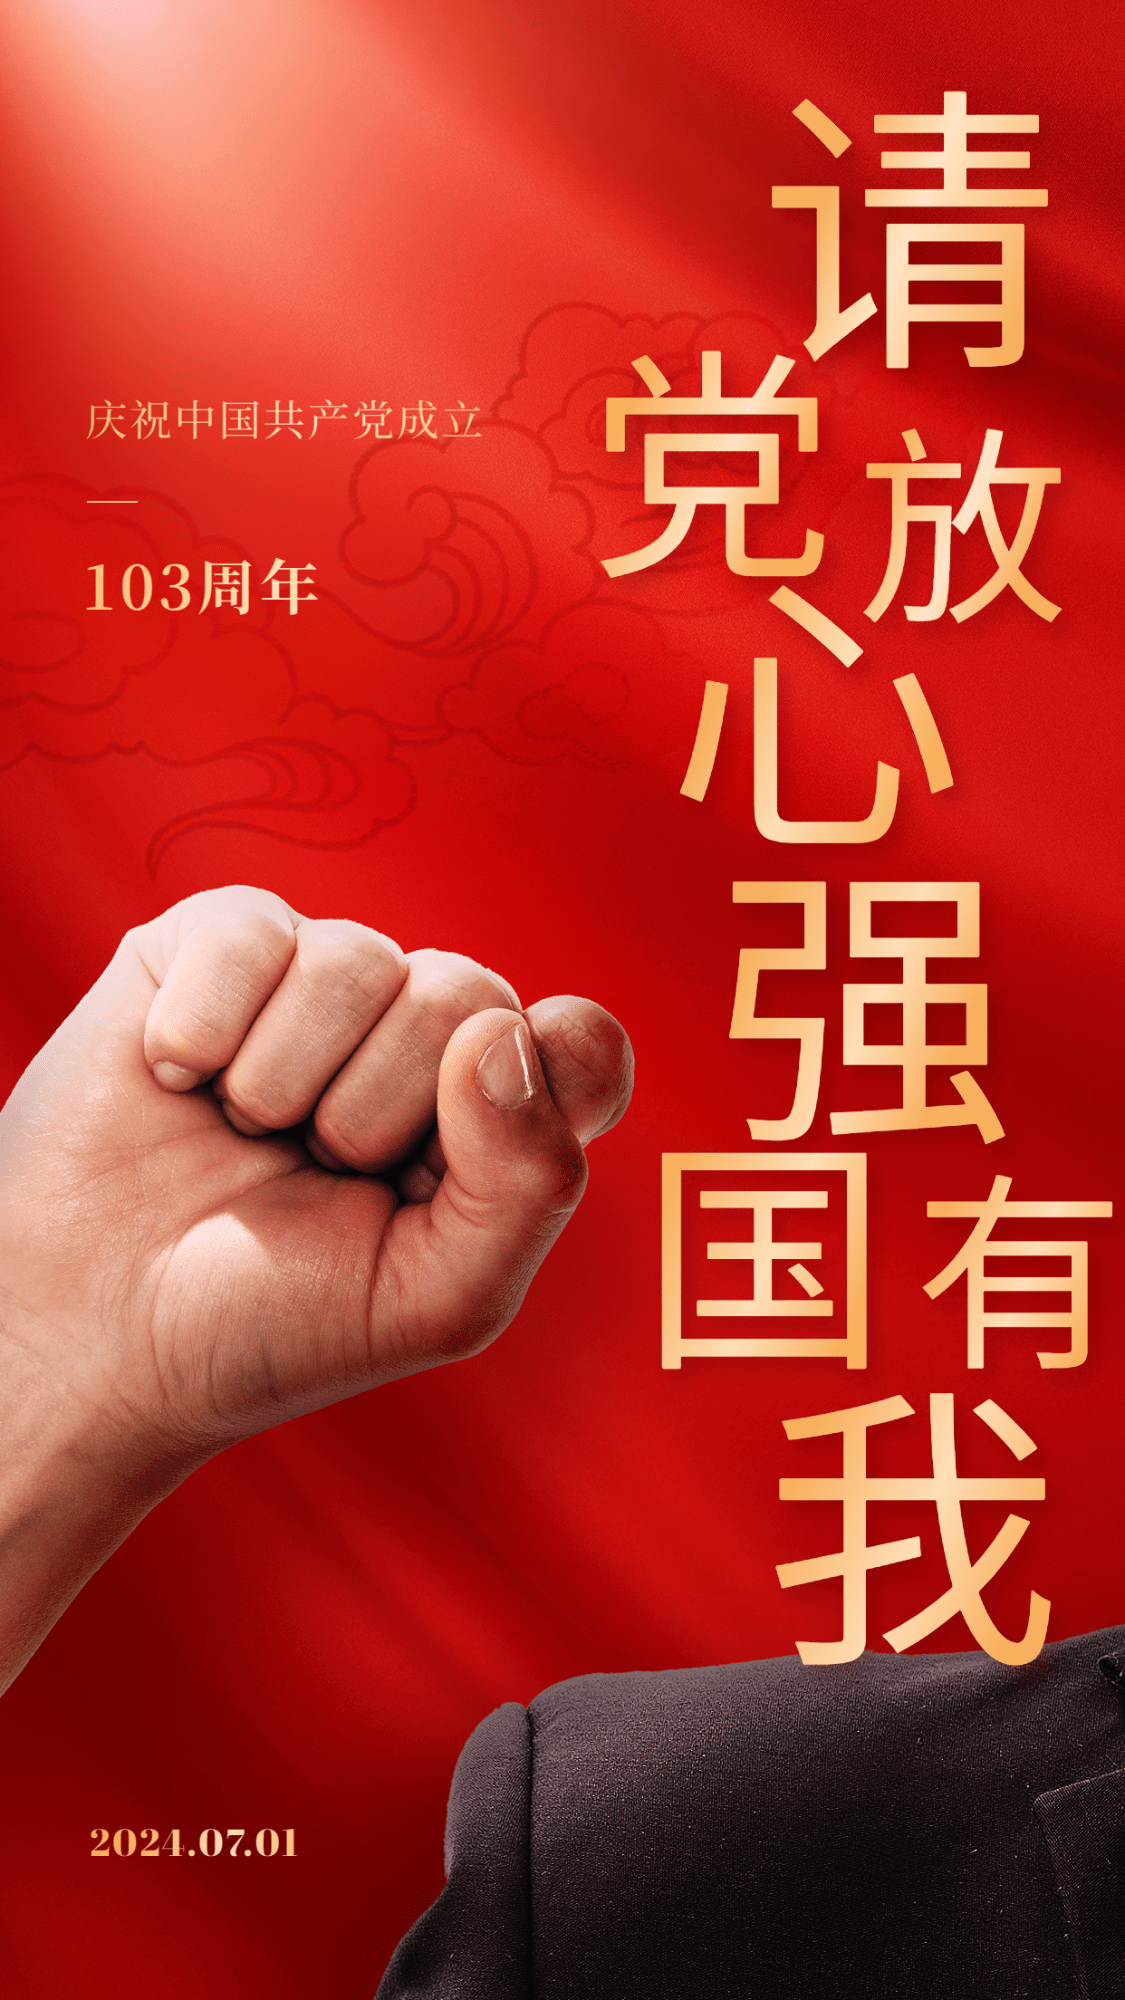 建党节节日祝福排版手机海报预览效果